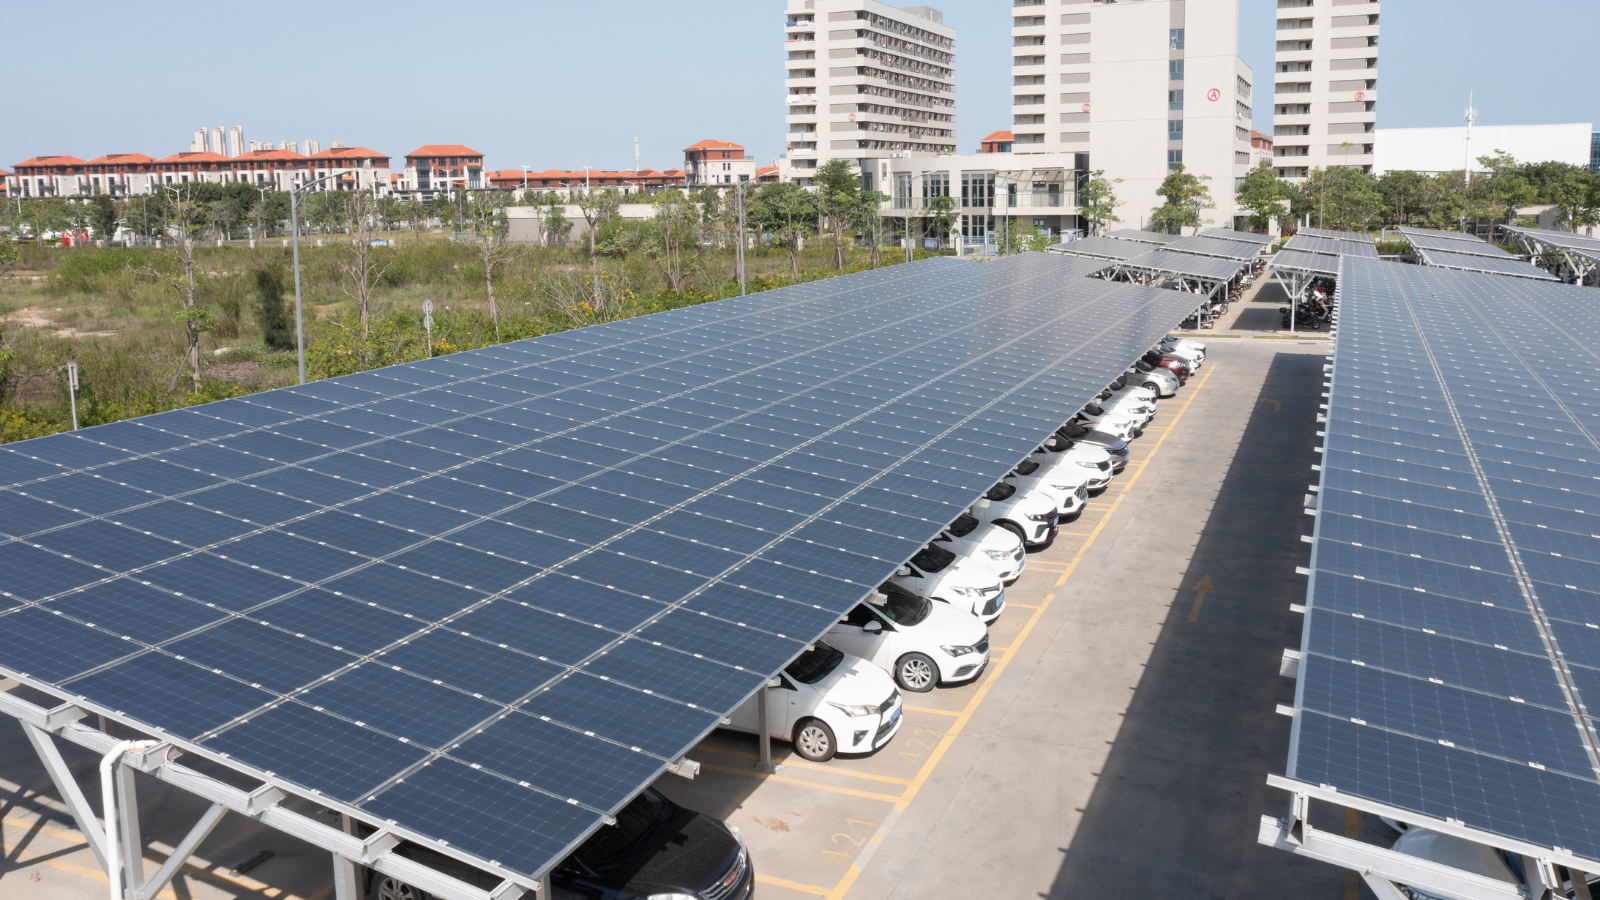 Solar Carport Structures in Florida